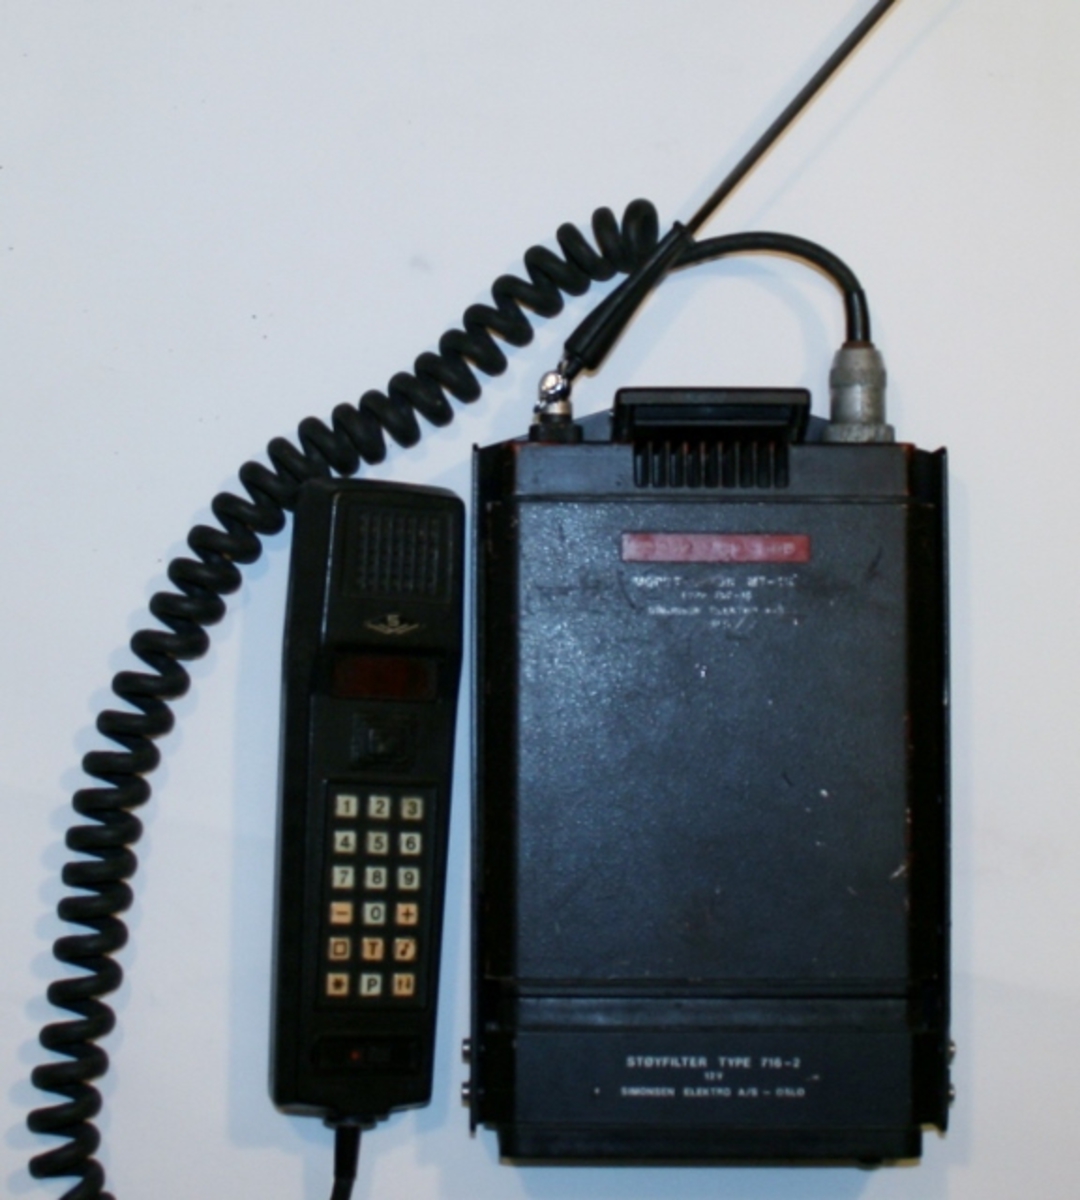 Simonsen mobiltelefon med bruksanvisning og støyfilter av type 716-2. Tekst på fronten veldig slitt og utydelig.